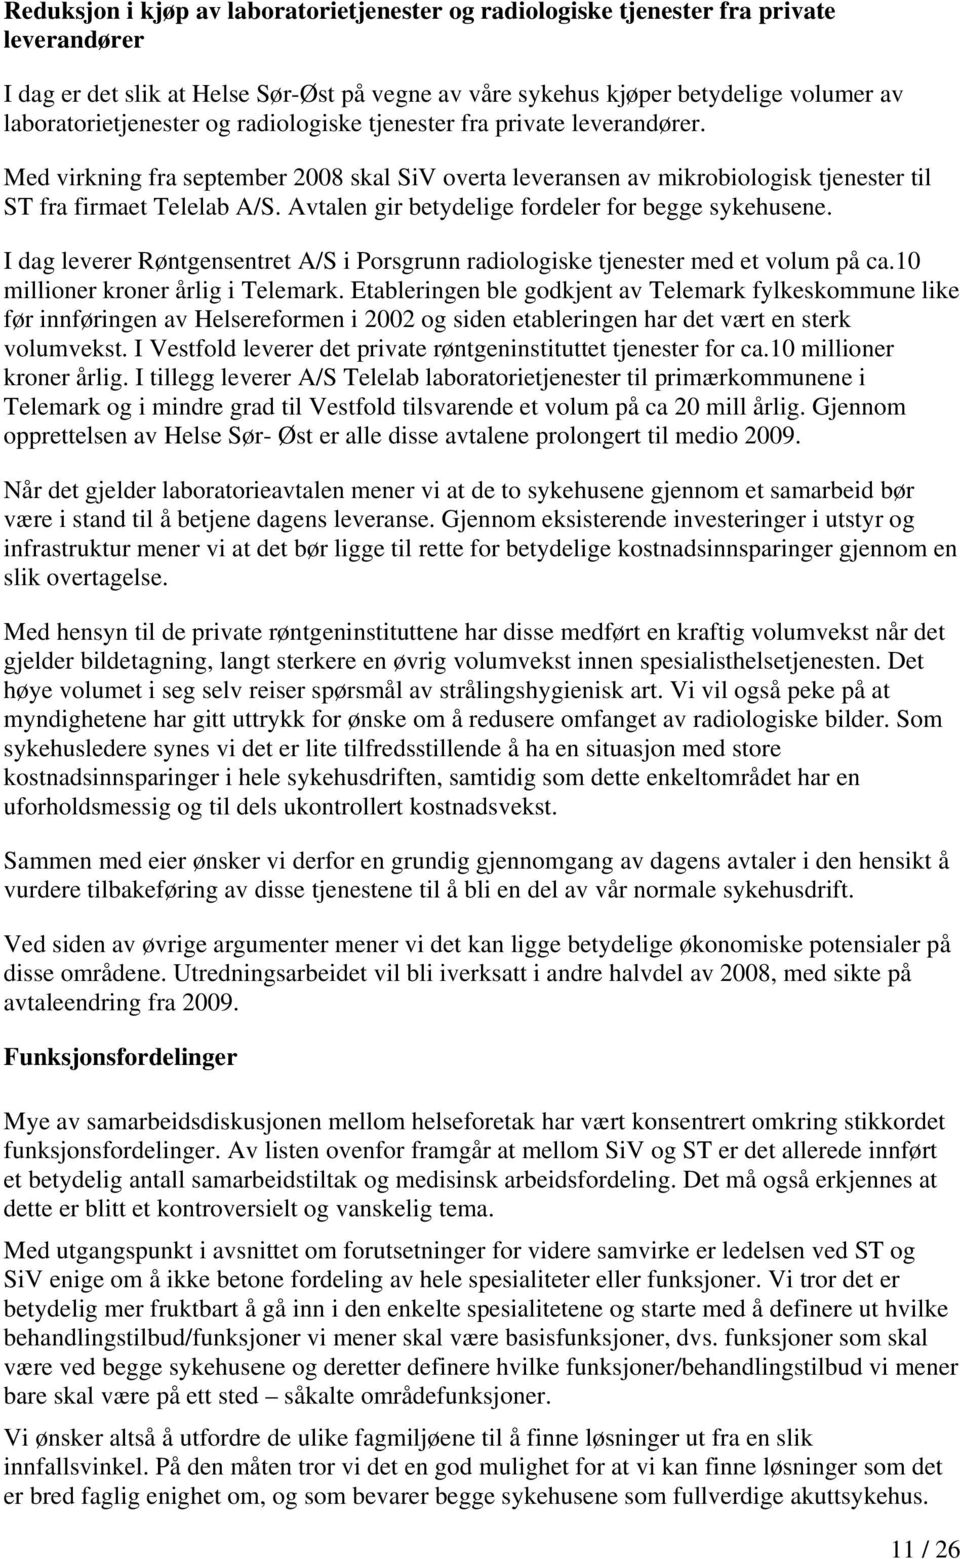 Avtalen gir betydelige fordeler for begge sykehusene. I dag leverer Røntgensentret A/S i Porsgrunn radiologiske tjenester med et volum på ca.10 millioner kroner årlig i Telemark.